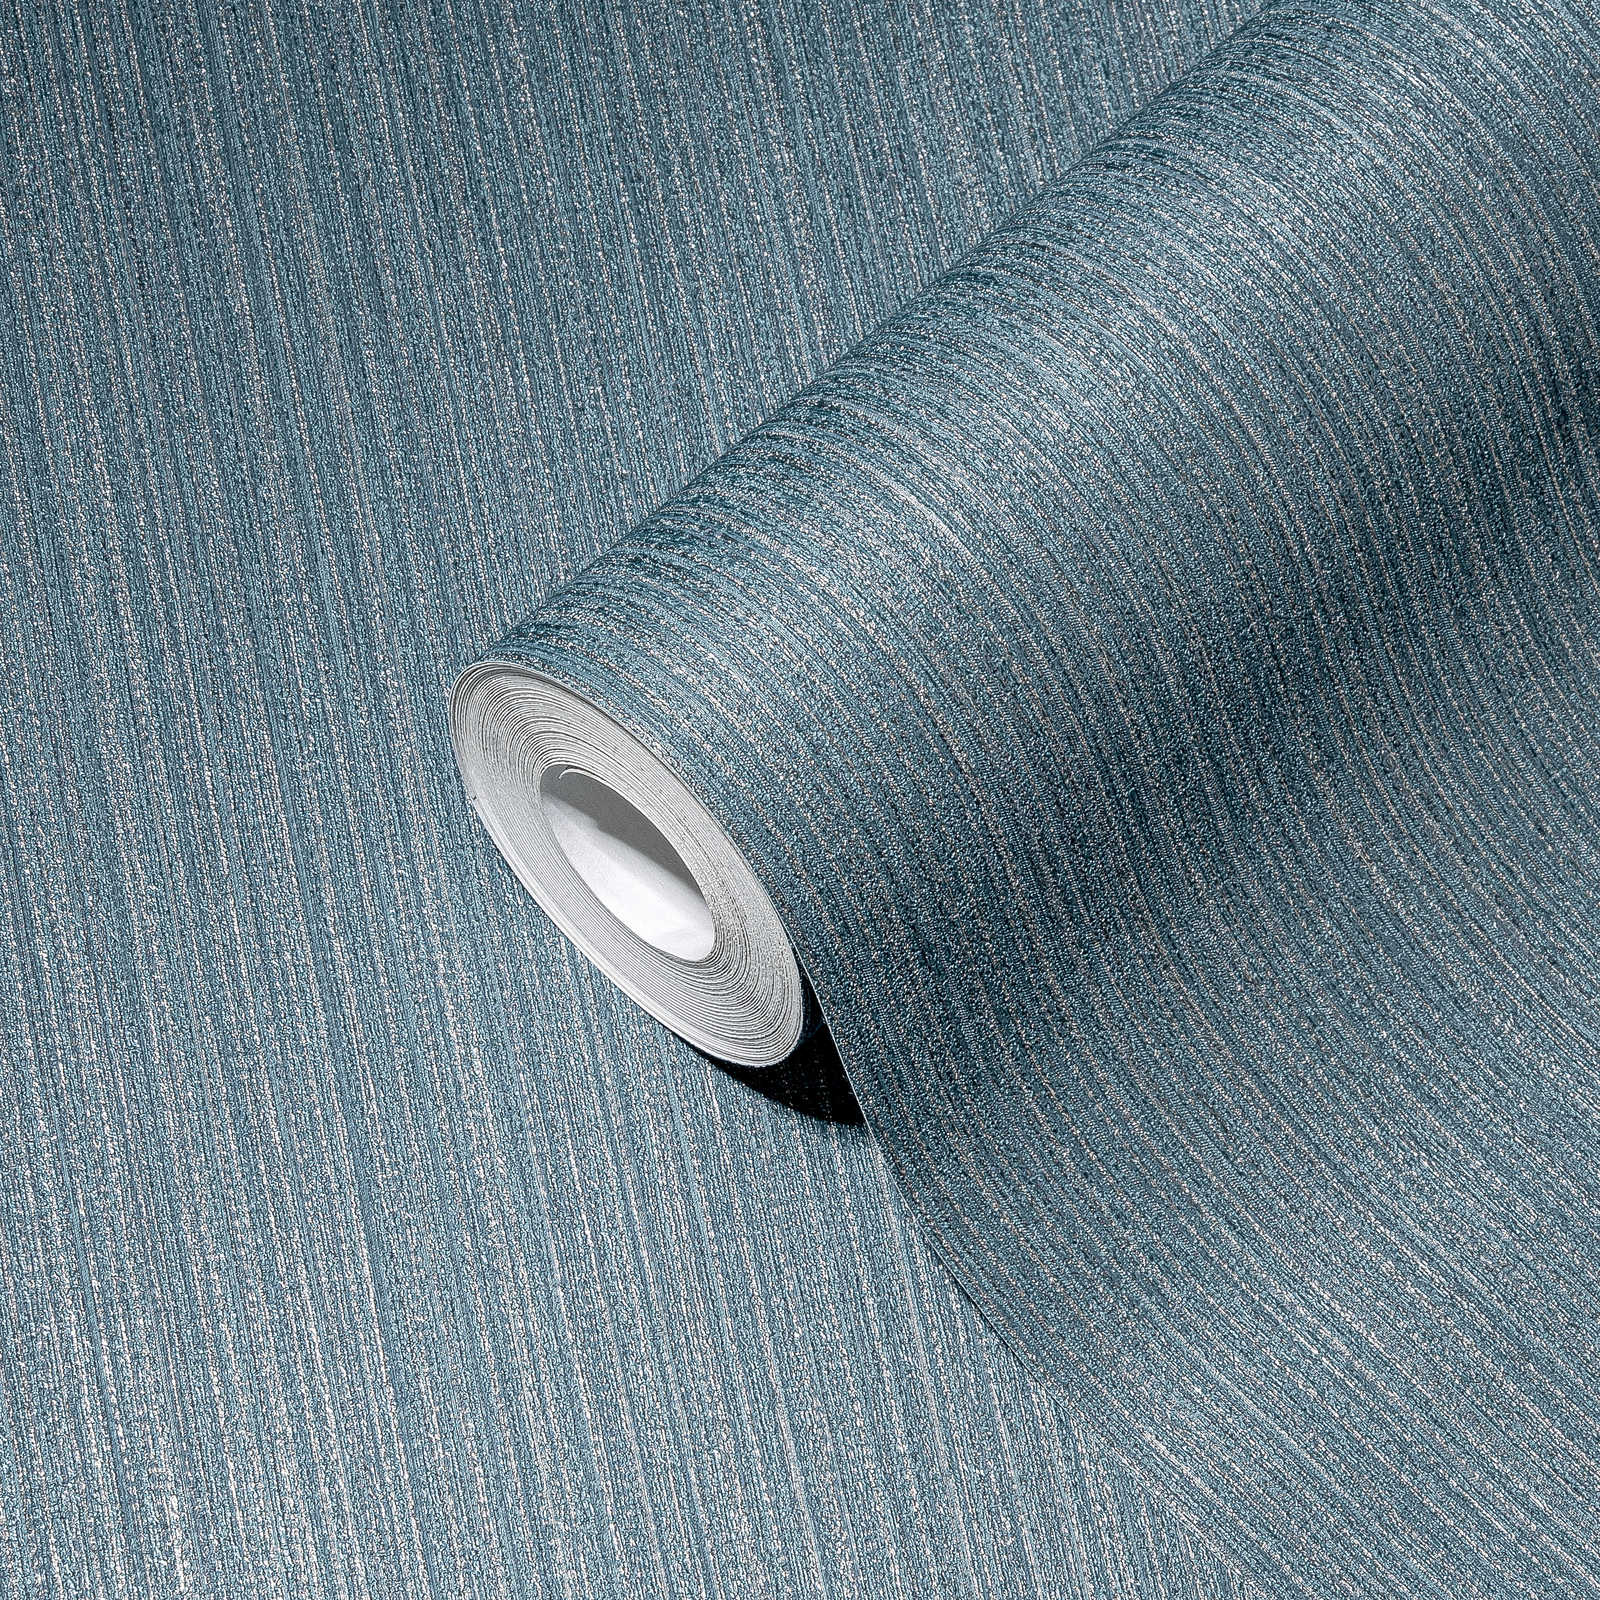             Eenheidsbehang met grijsblauwe textiellook - blauw, metallic
        